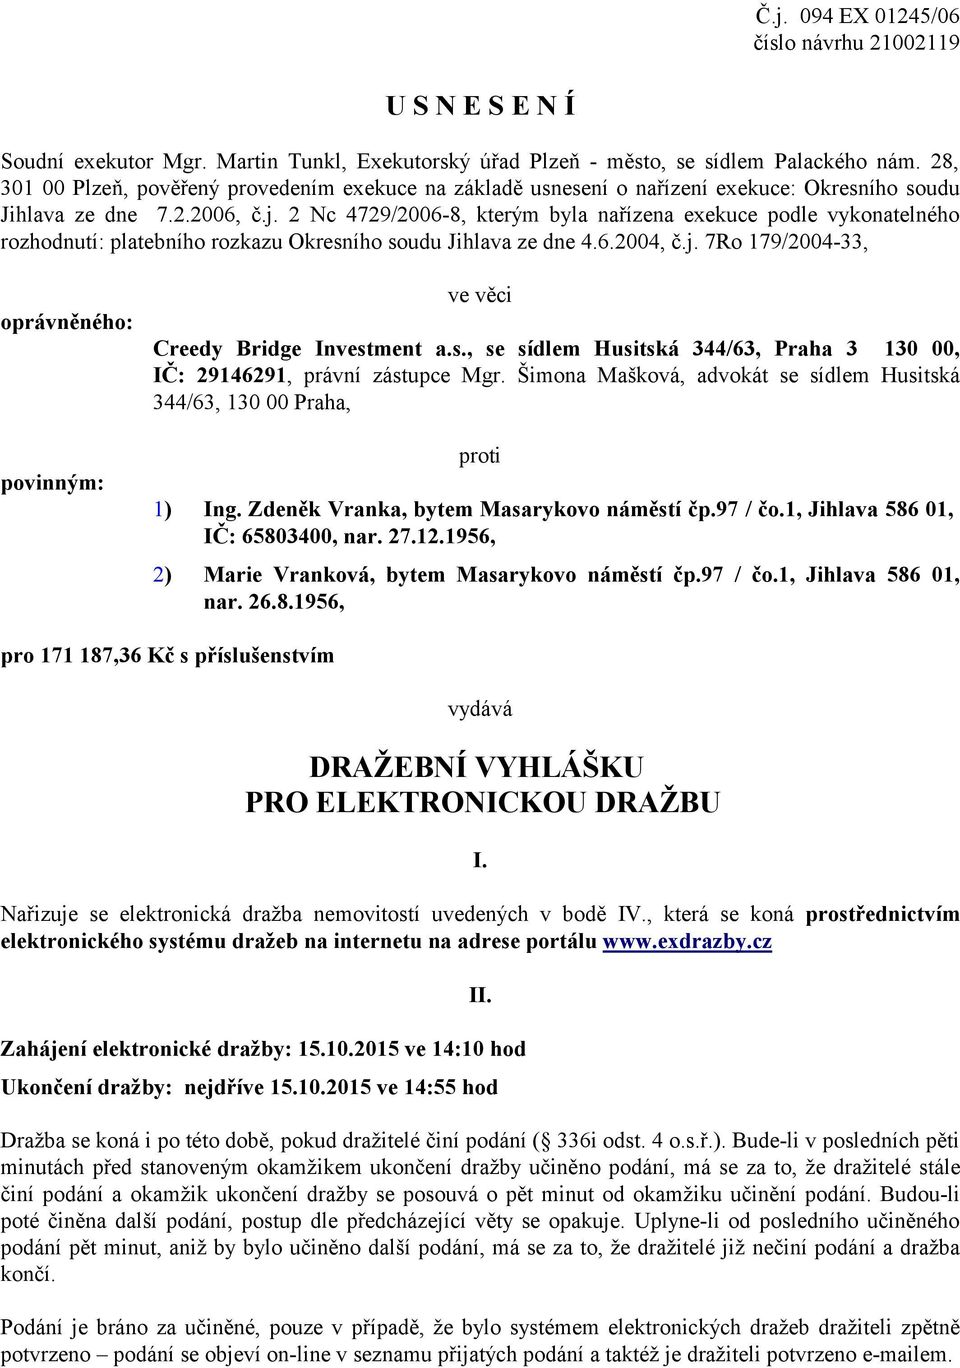 2 Nc 4729/2006-8, kterým byla nařízena exekuce podle vykonatelného rozhodnutí: platebního rozkazu Okresního soudu Jihlava ze dne 4.6.2004, č.j.